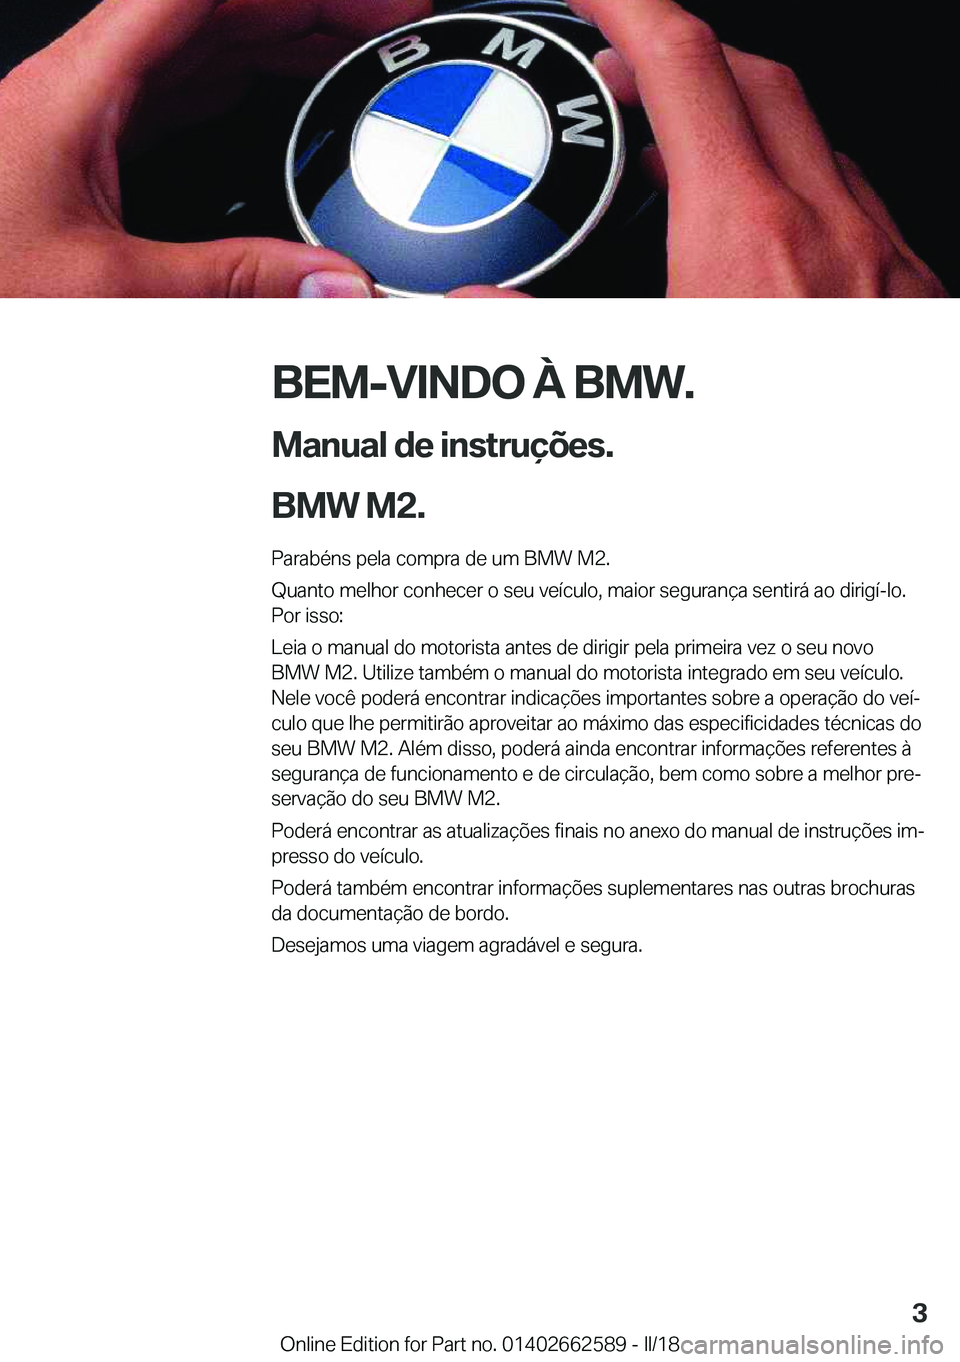 BMW M2 2018  Manual do condutor (in Portuguese) �B�E�M�-�V�I�N�D�O��À��B�M�W�.
�M�a�n�u�a�l��d�e��i�n�s�t�r�u�